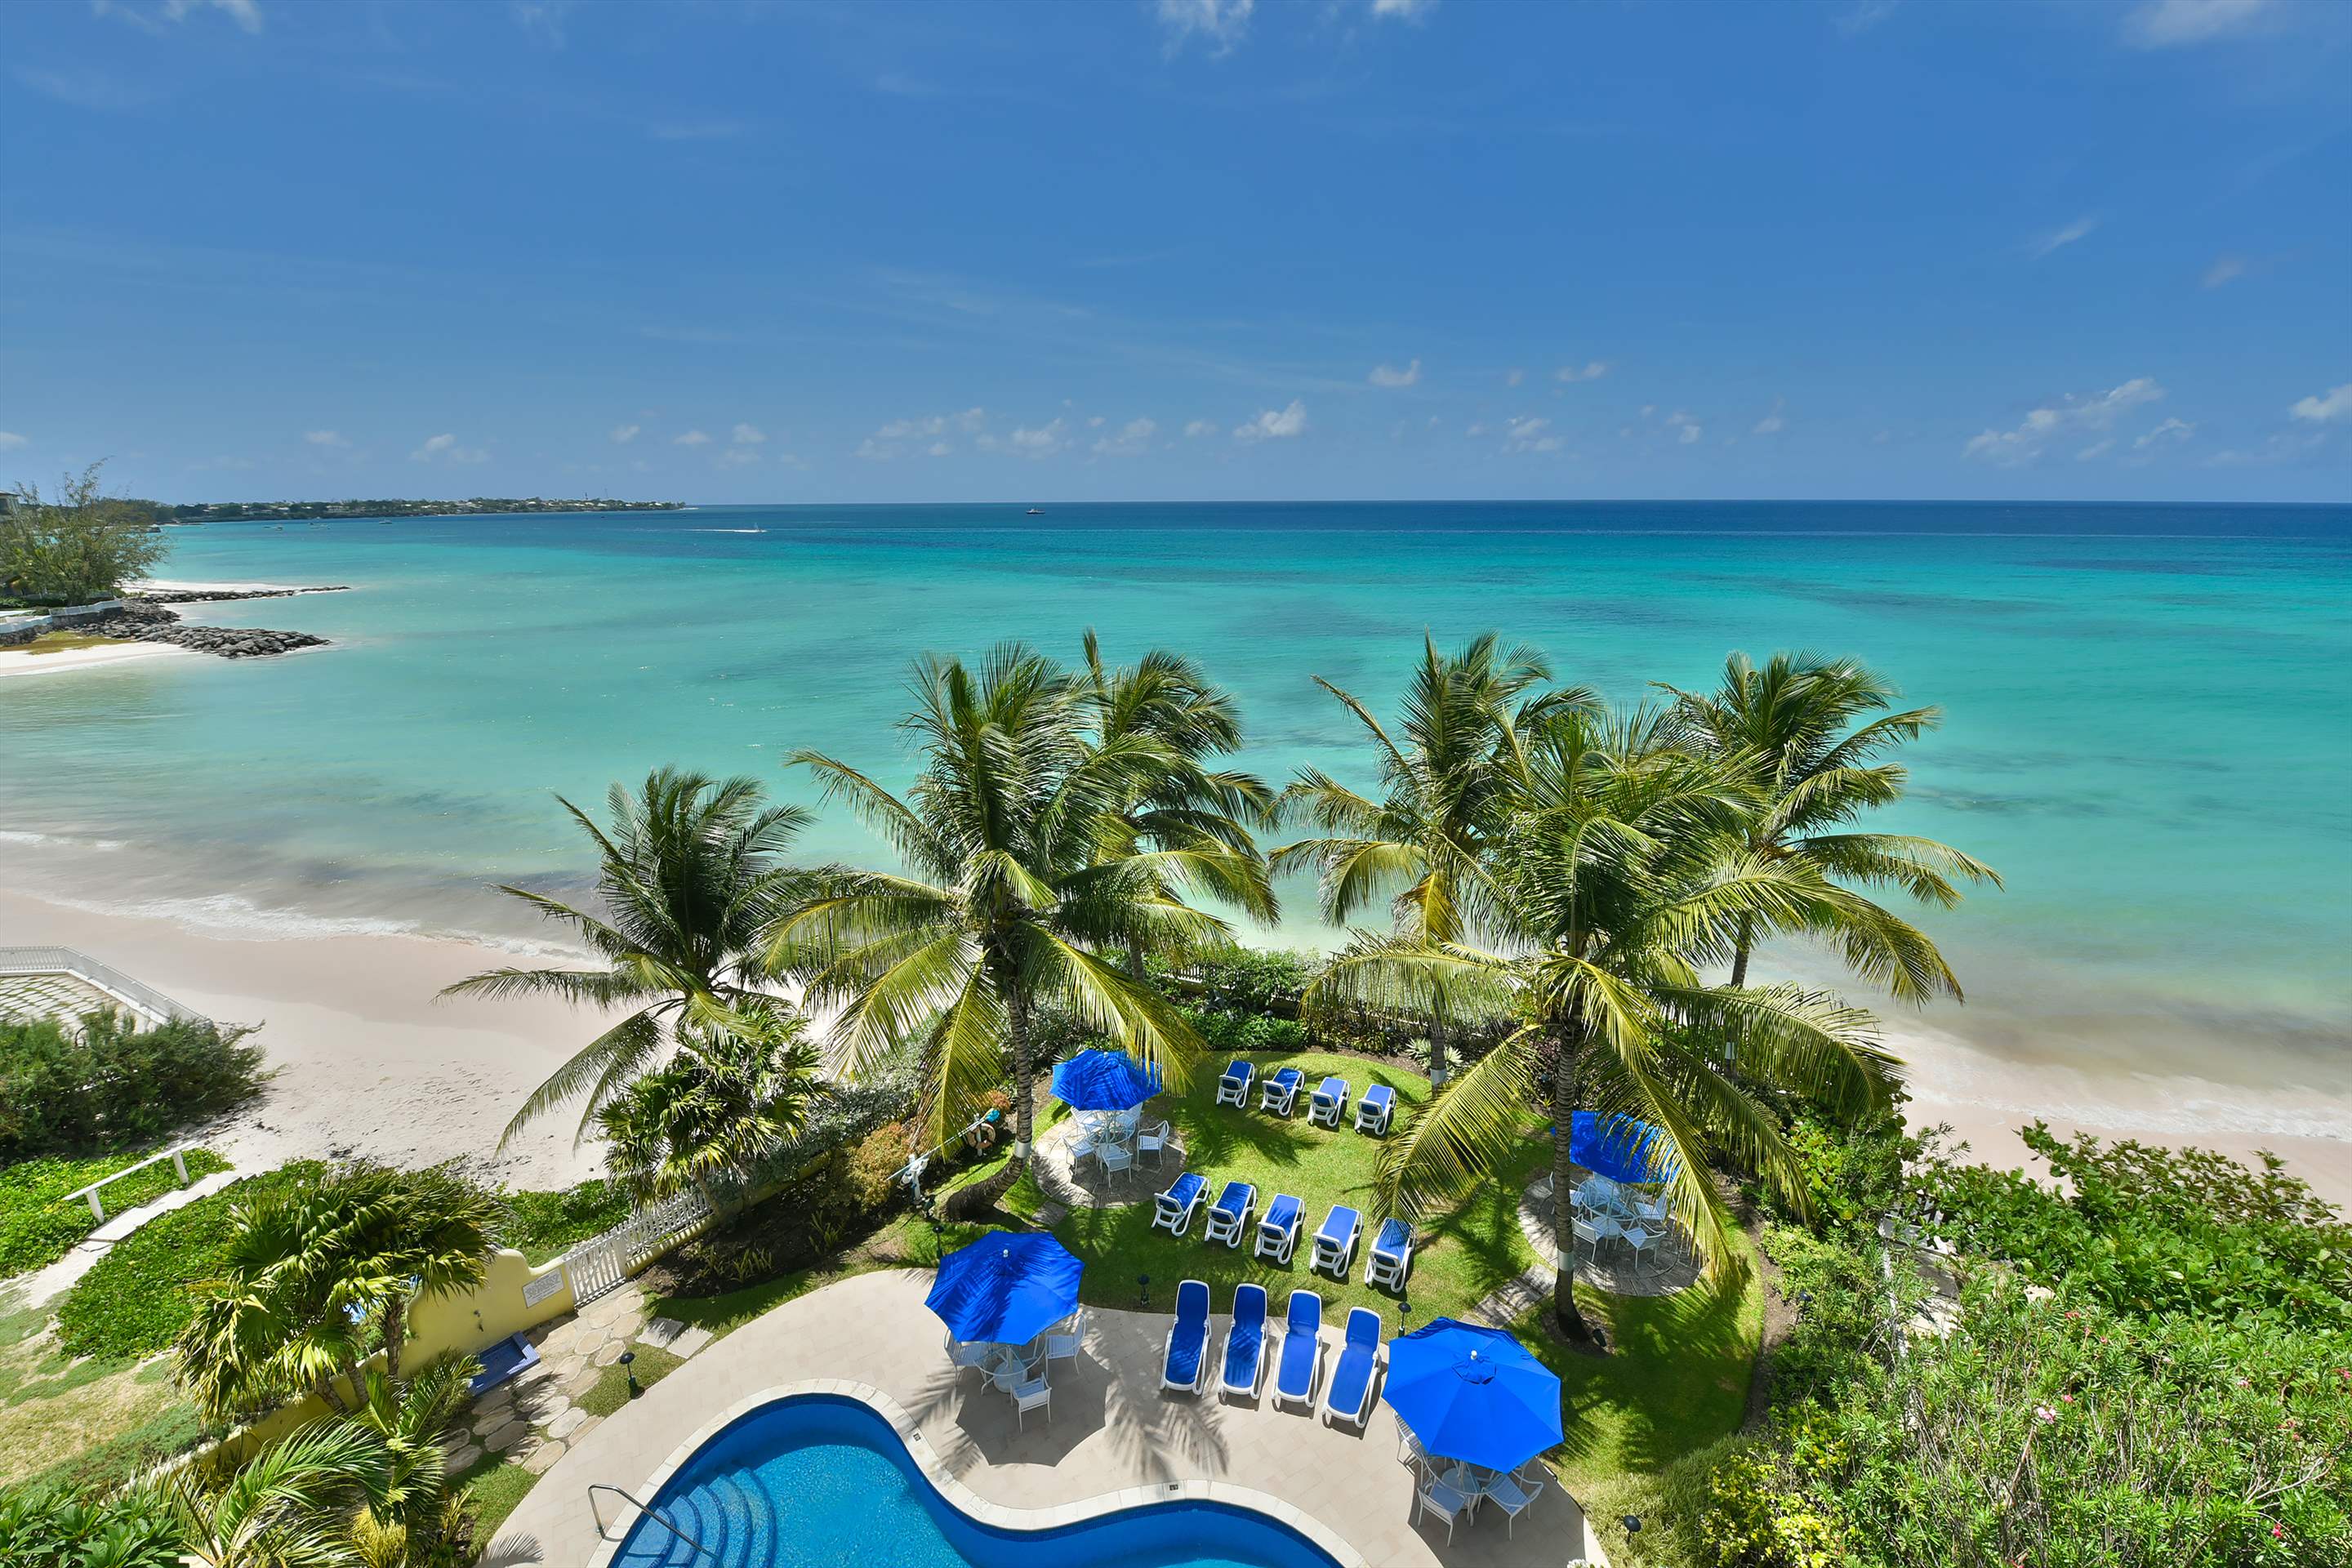 Maxwell Beach Villas 501, 2 bedroom, 2 bedroom villa in St. Lawrence Gap & South Coast, Barbados Photo #6